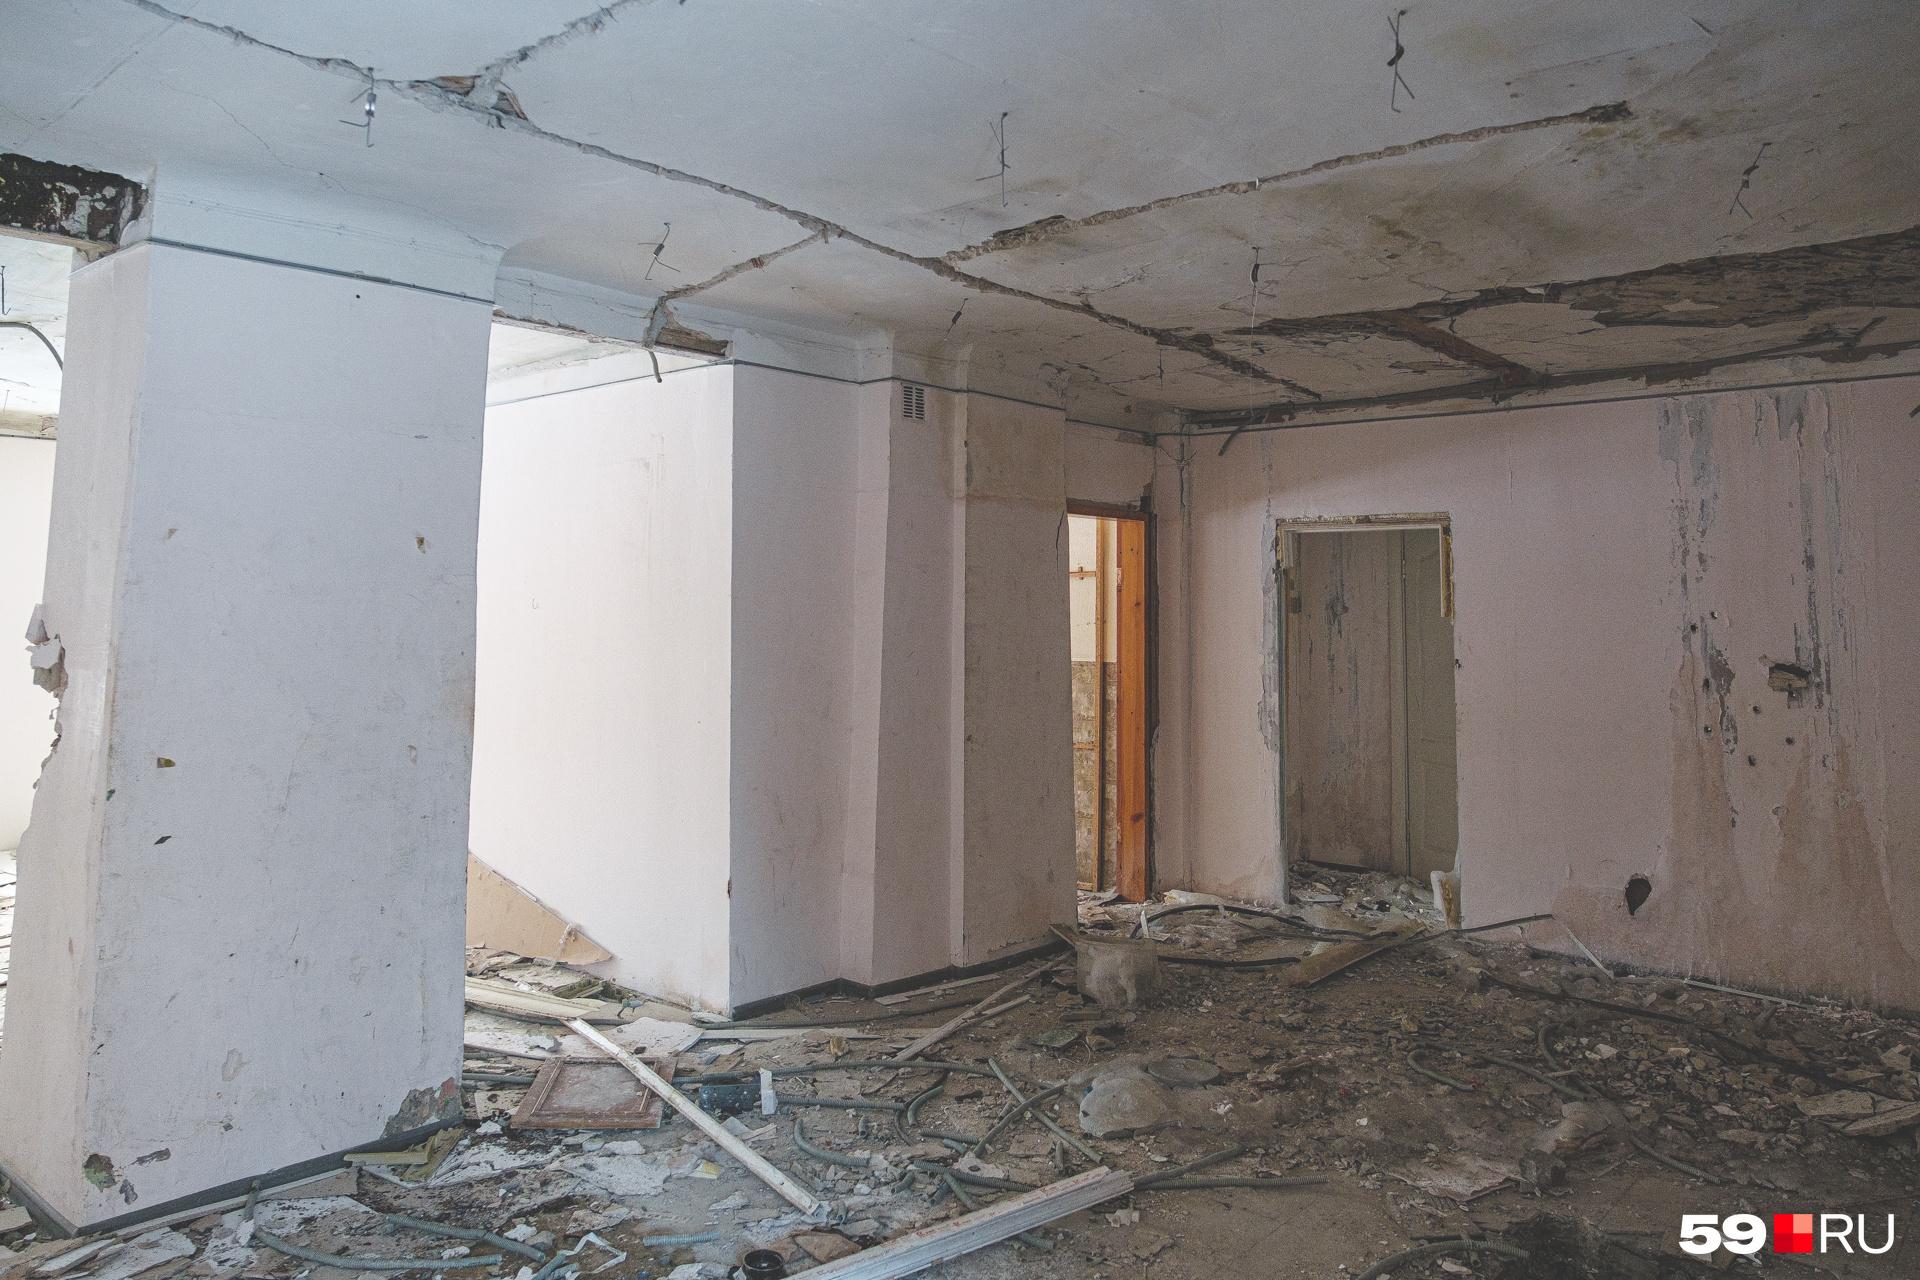 Внутри много трещин и просевшие потолки — всё указывает на аварийное состояние постройки